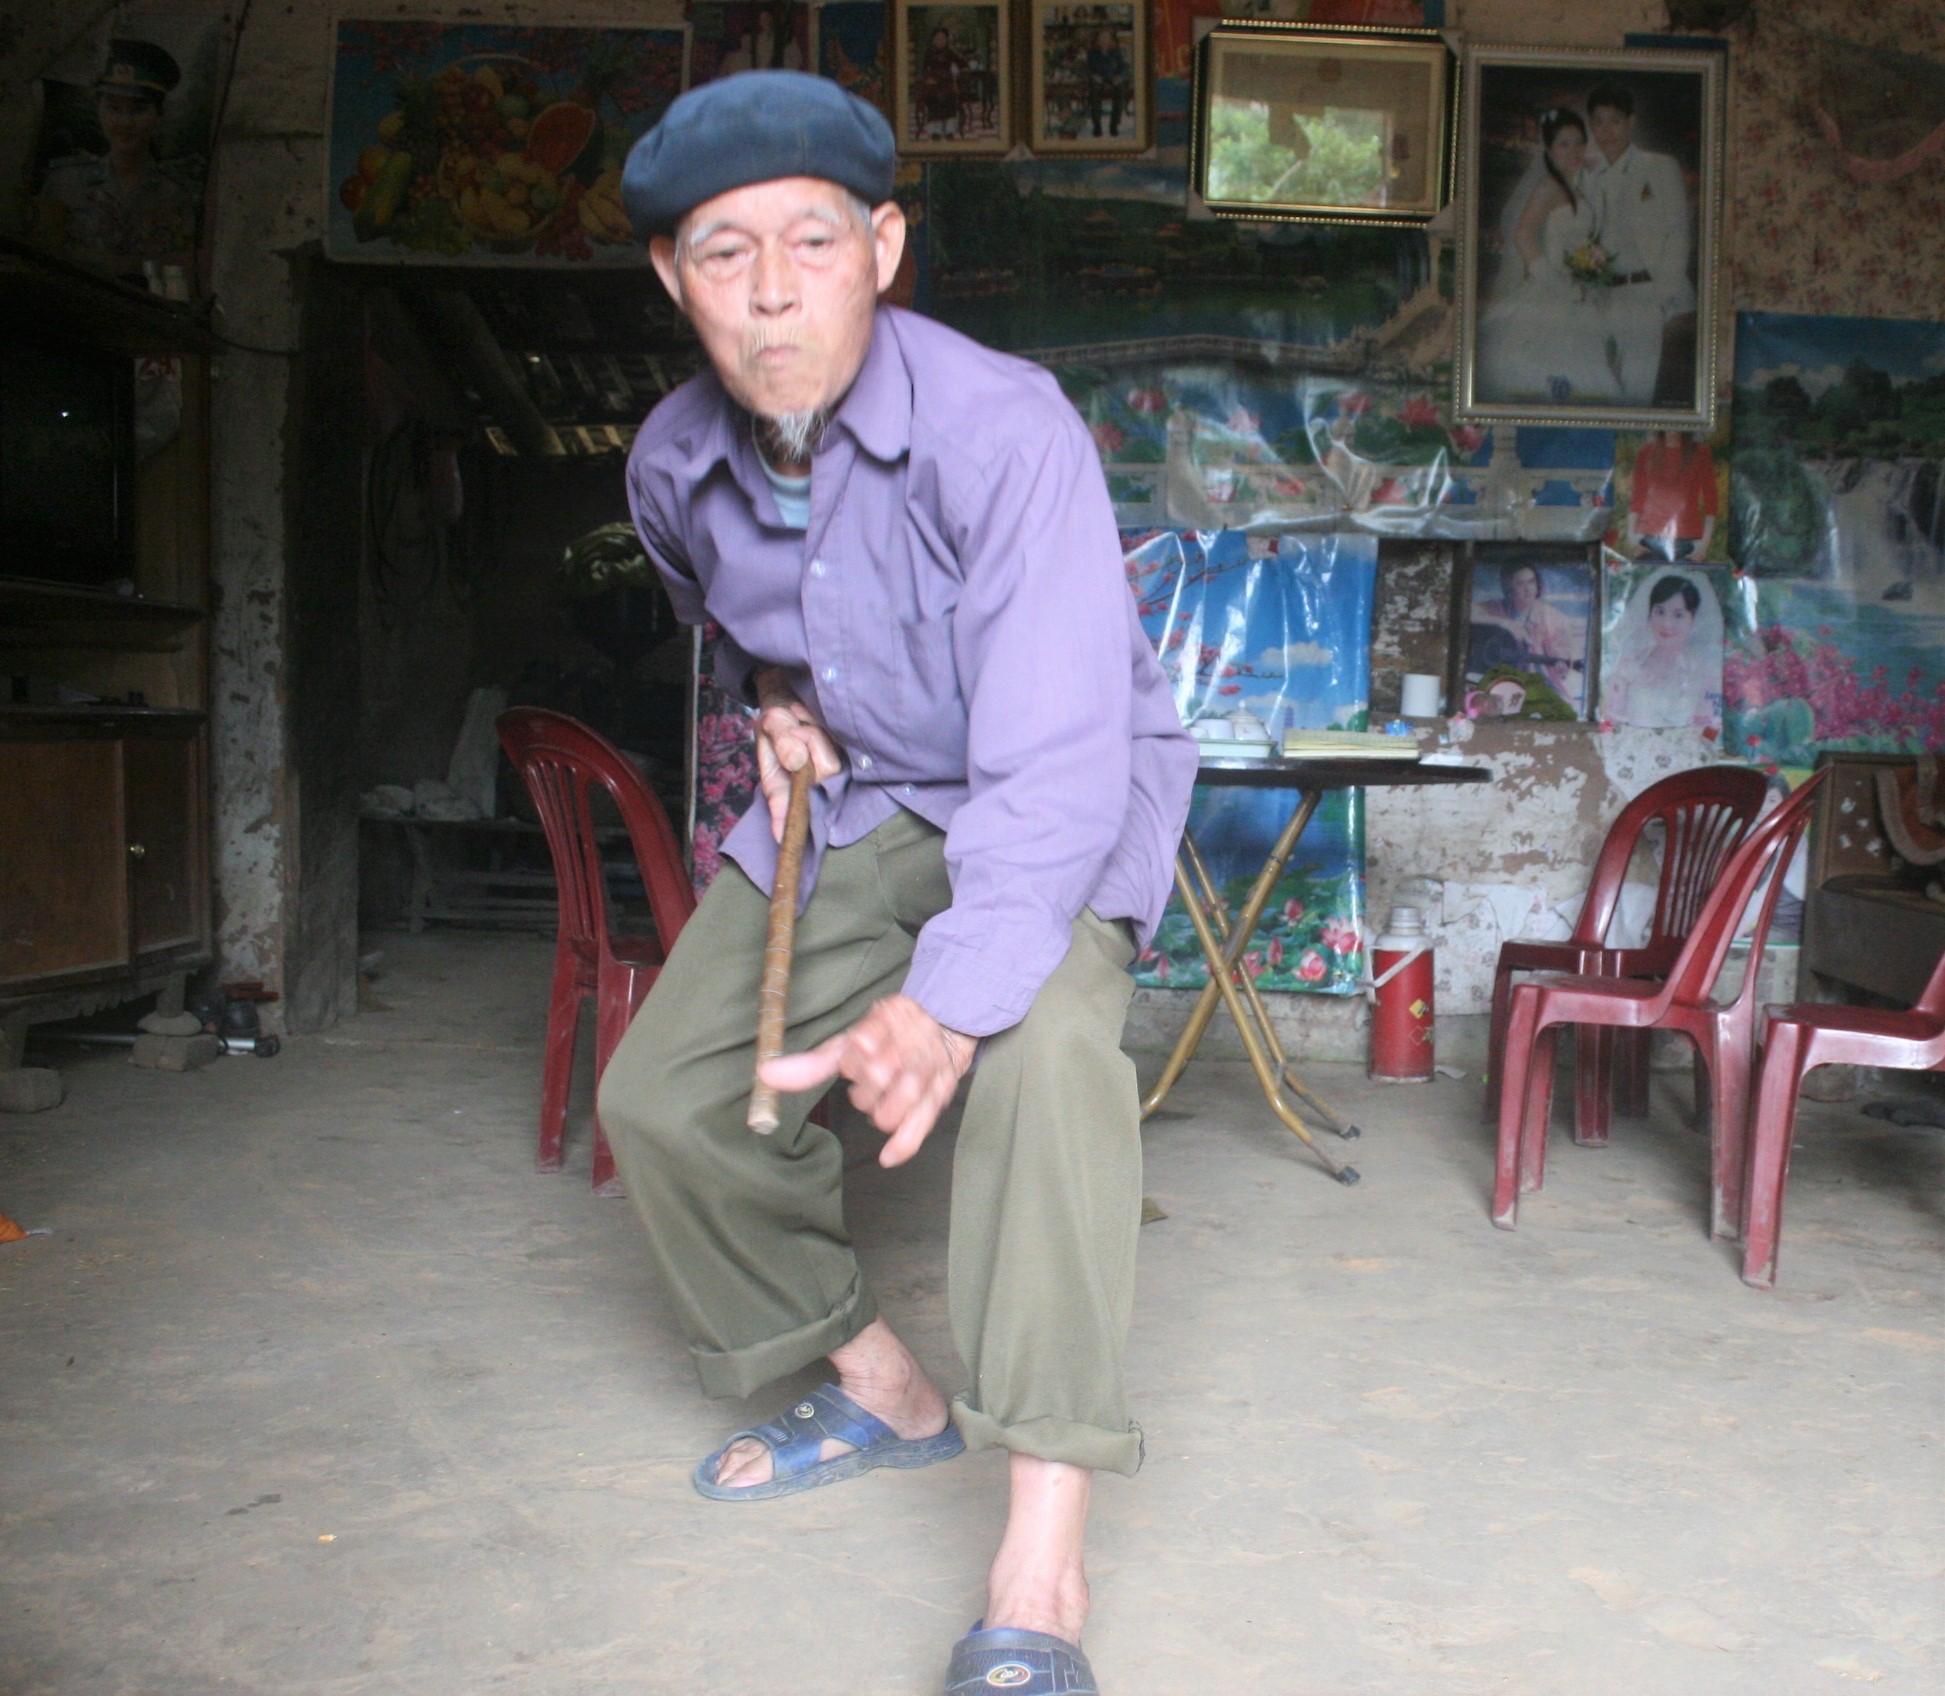 Võ sư Bế Nguyên Giai luôn hoài niệm về môn võ cổ truyền một thời ở Bính Xá (Trong ảnh: Võ sư Bế Nguyên Giai biểu diễn một thế võ cổ truyền)